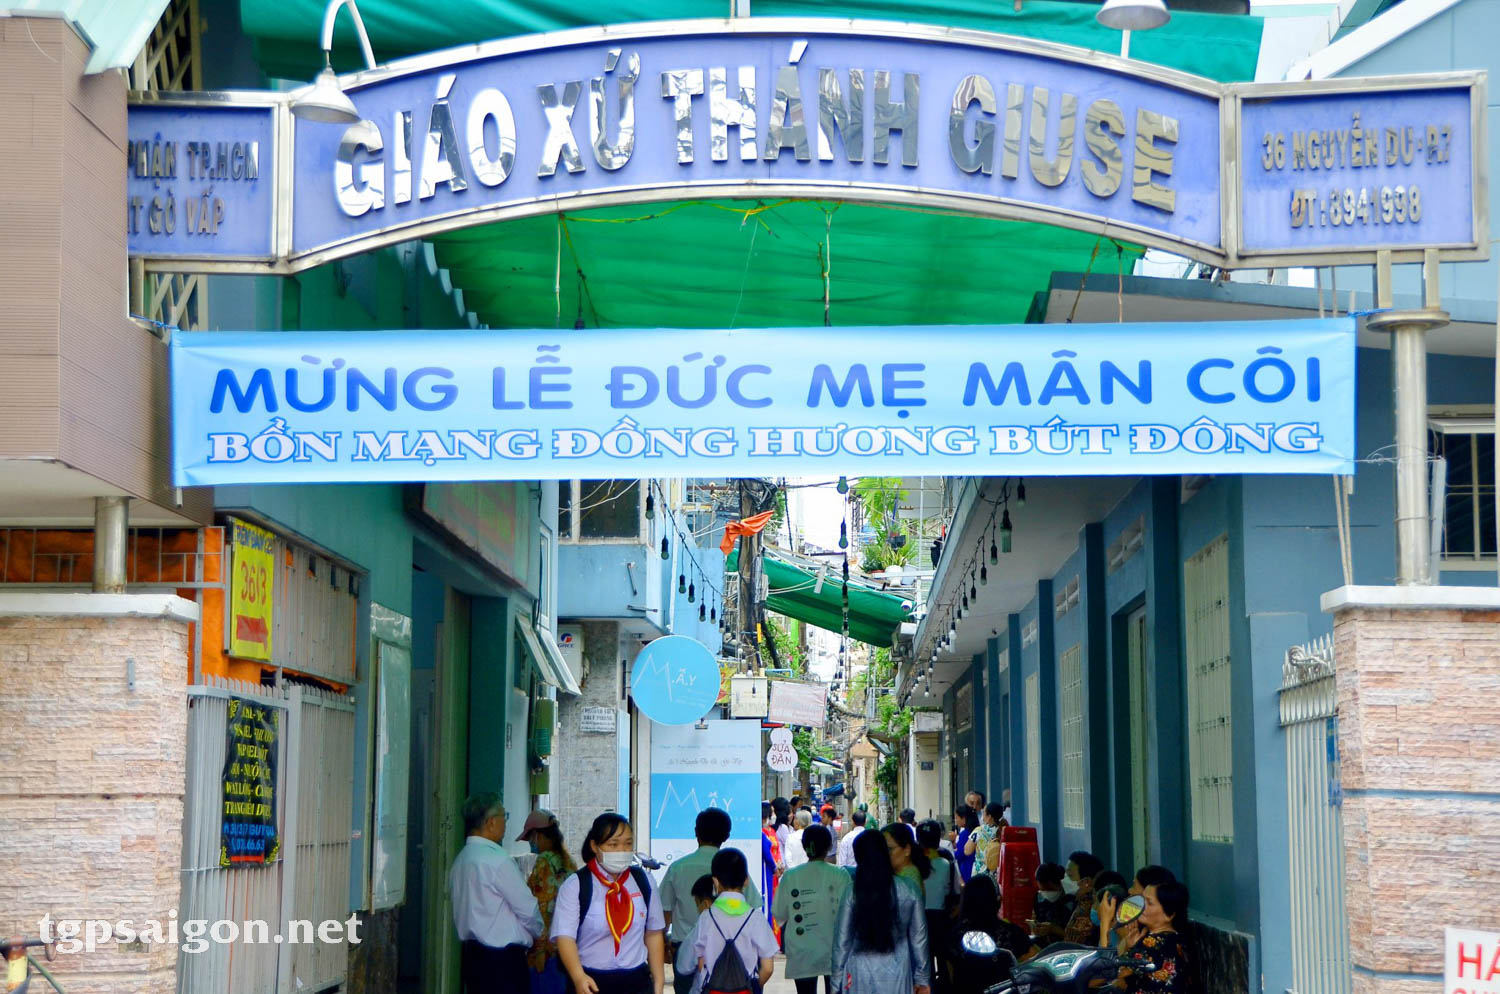 TGP.Sài Gòn - Đồng hương Bút Đông miền Nam: Mừng lễ bổn mạng 2022